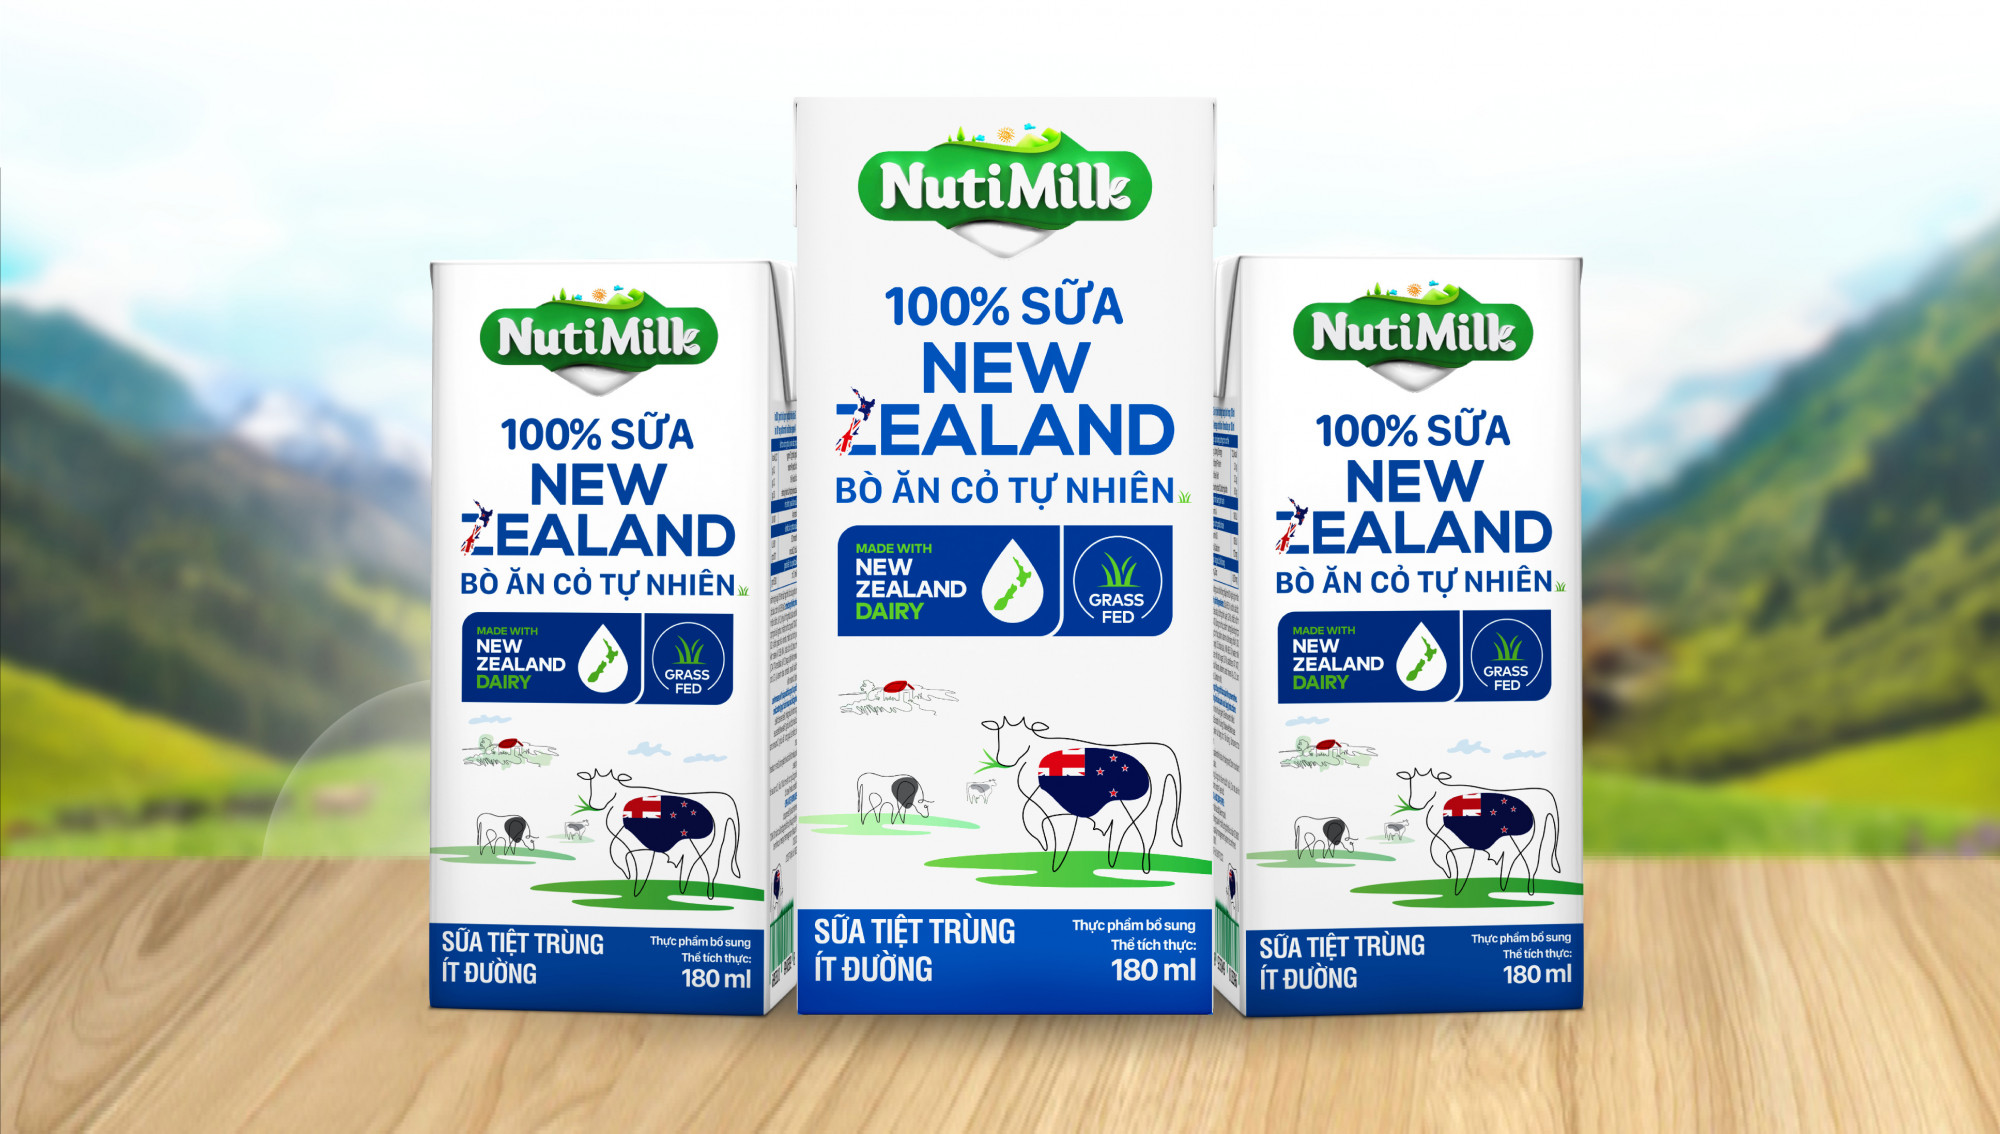 Nutifood giảm 50% đối với sản phẩm NutiMilk 100% Sữa New Zealand Bò Ăn Cỏ Tự Nhiên Ít Đường